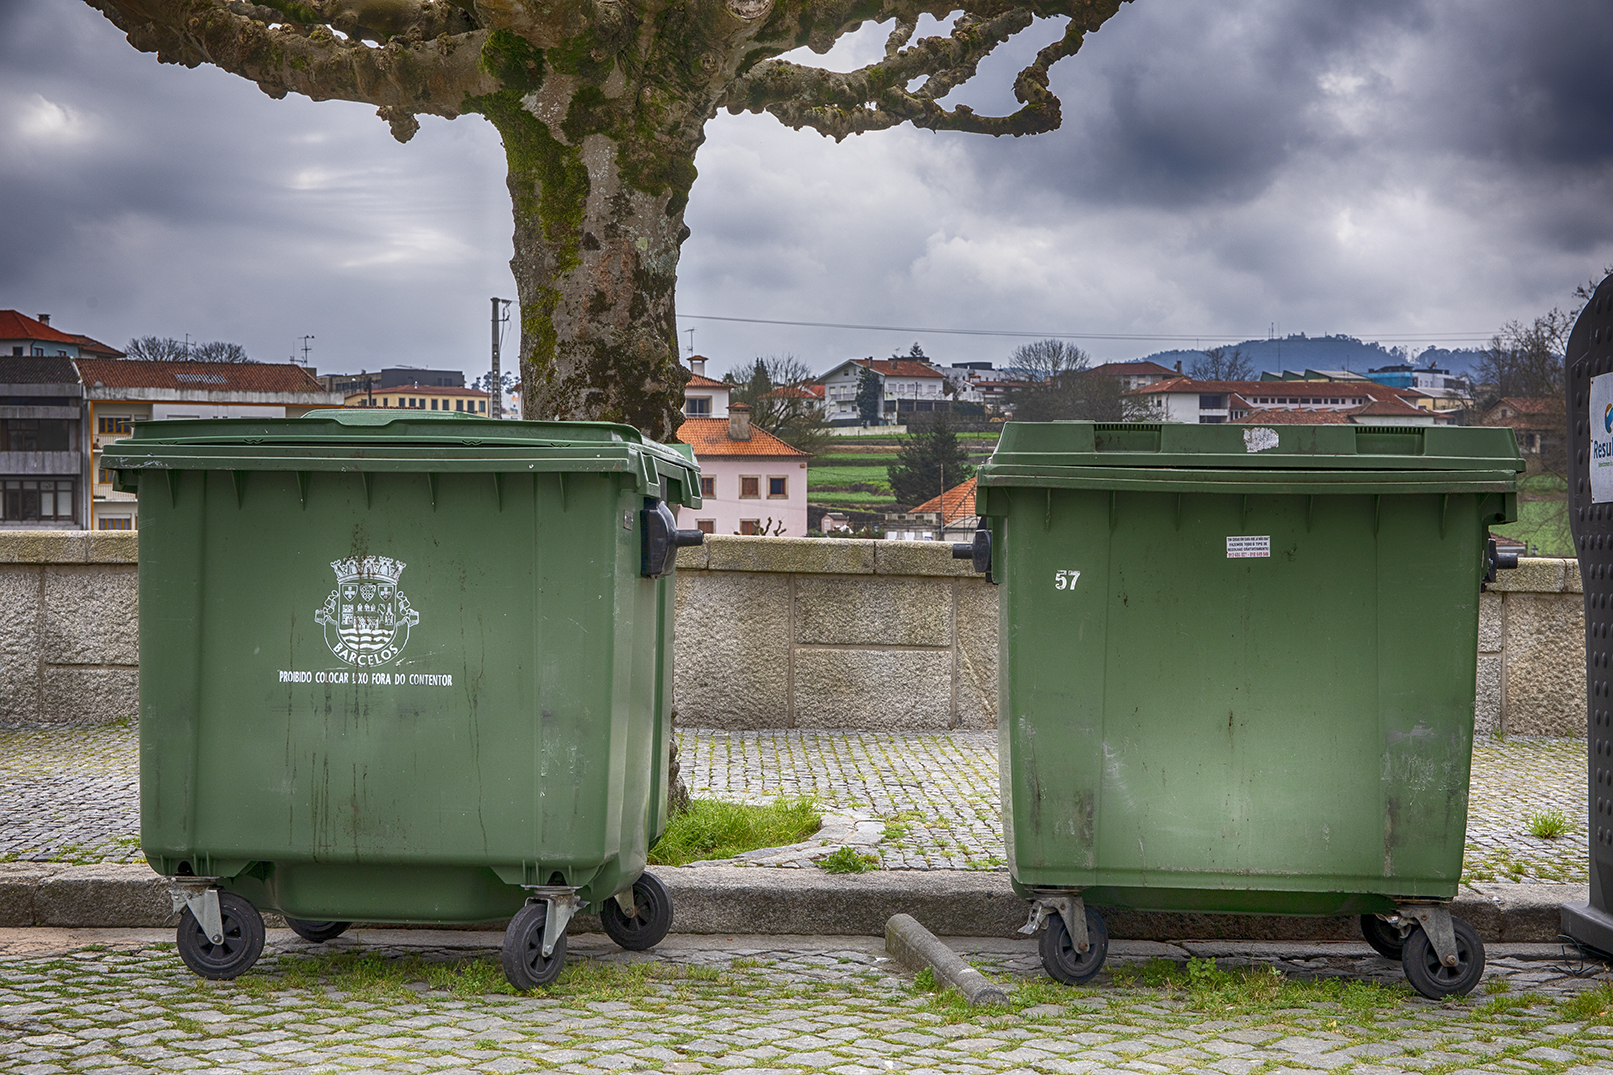 Câmara Municipal assegura boas práticas na higiene urbana com serviço de limpeza e desinfeção dos contentores de resíduos sólidos